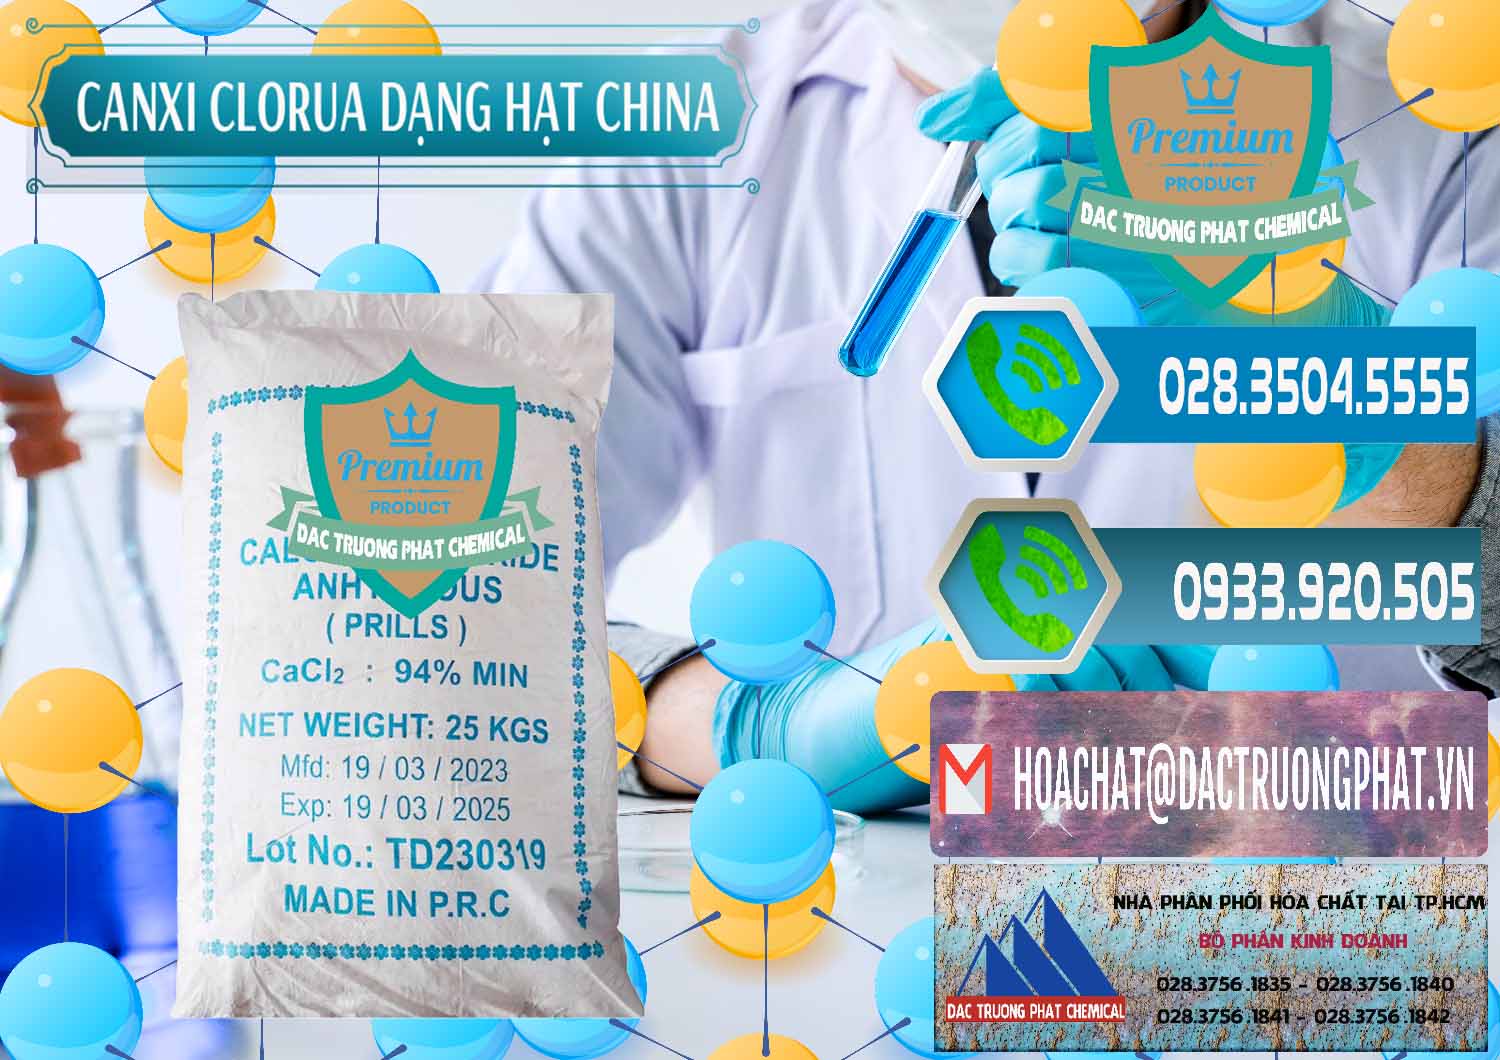 Cty bán _ cung ứng CaCl2 – Canxi Clorua 94% Dạng Hạt Trung Quốc China - 0373 - Công ty chuyên bán ( phân phối ) hóa chất tại TP.HCM - congtyhoachat.net